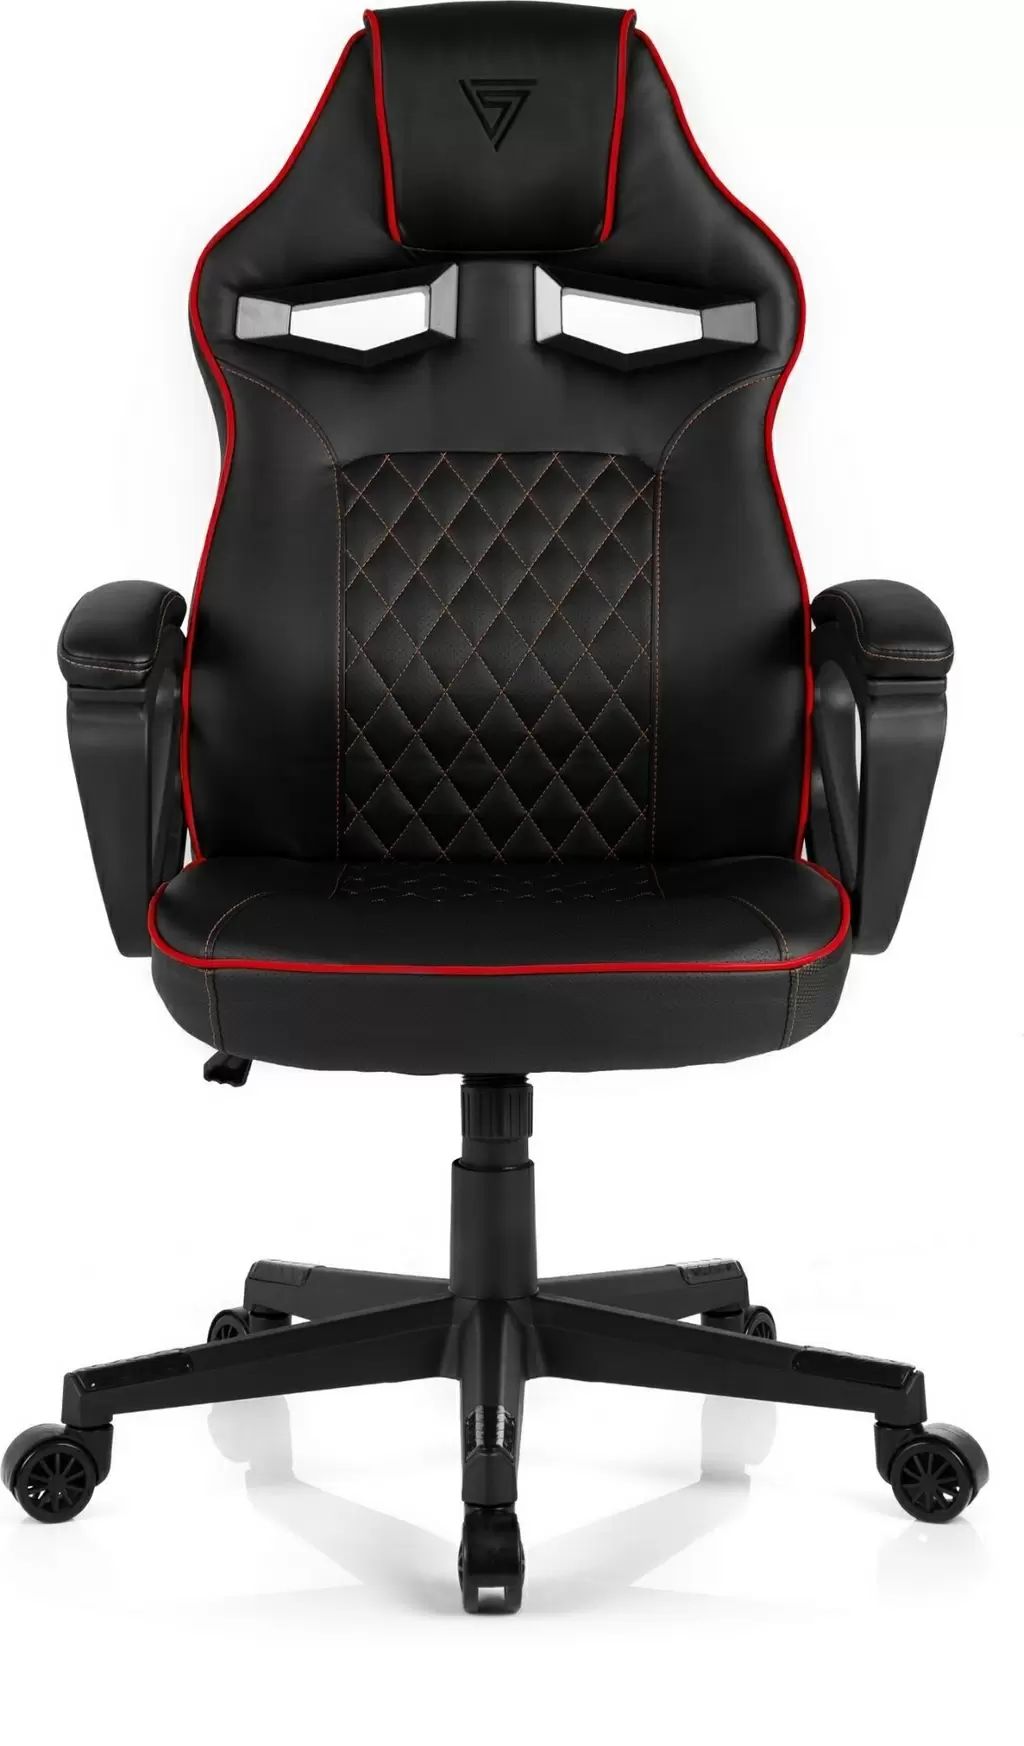 Компьютерное кресло SENSE7 Knight, черный/красный